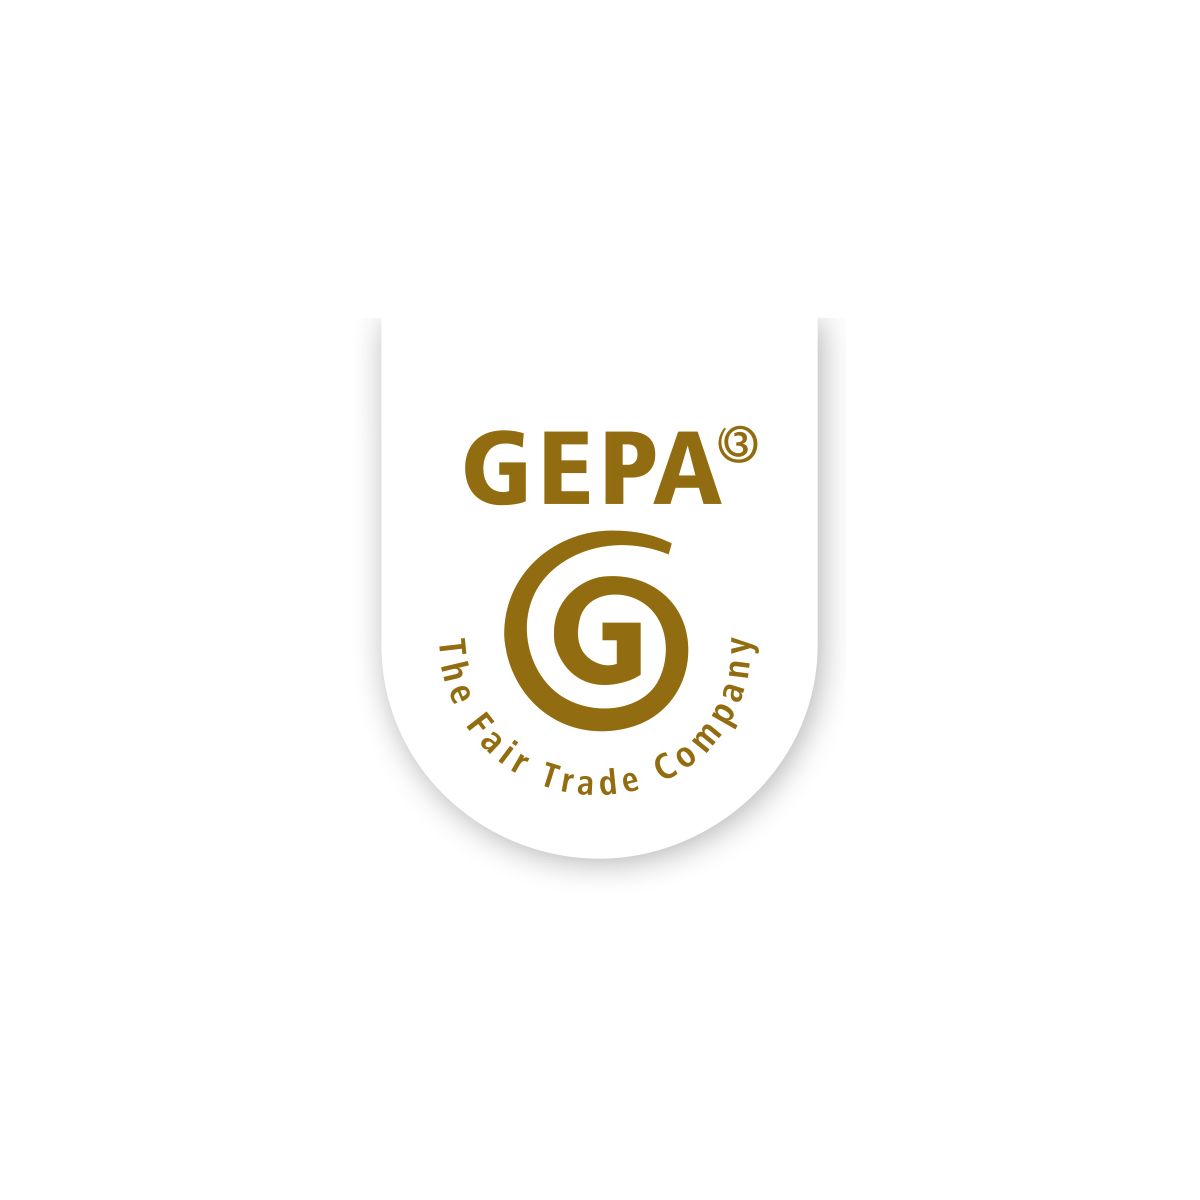  GEPA - The Fair Trade Company 

  Die GEPA...